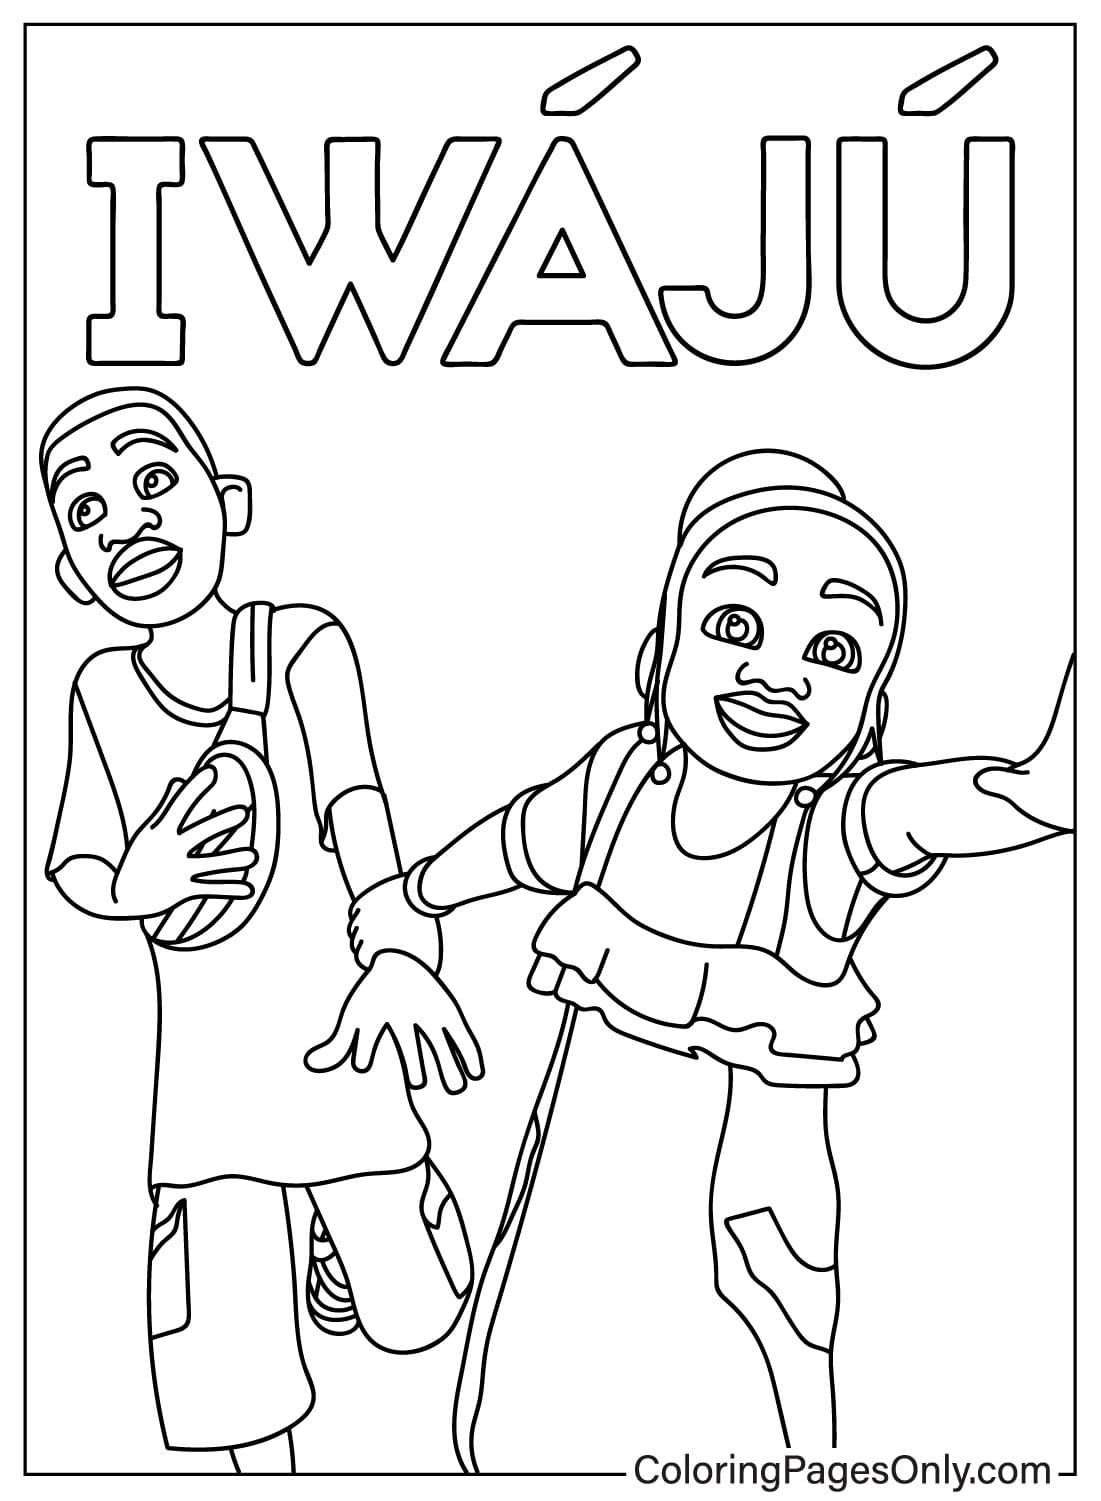 Página para colorear de Iwájú gratis de Iwájú